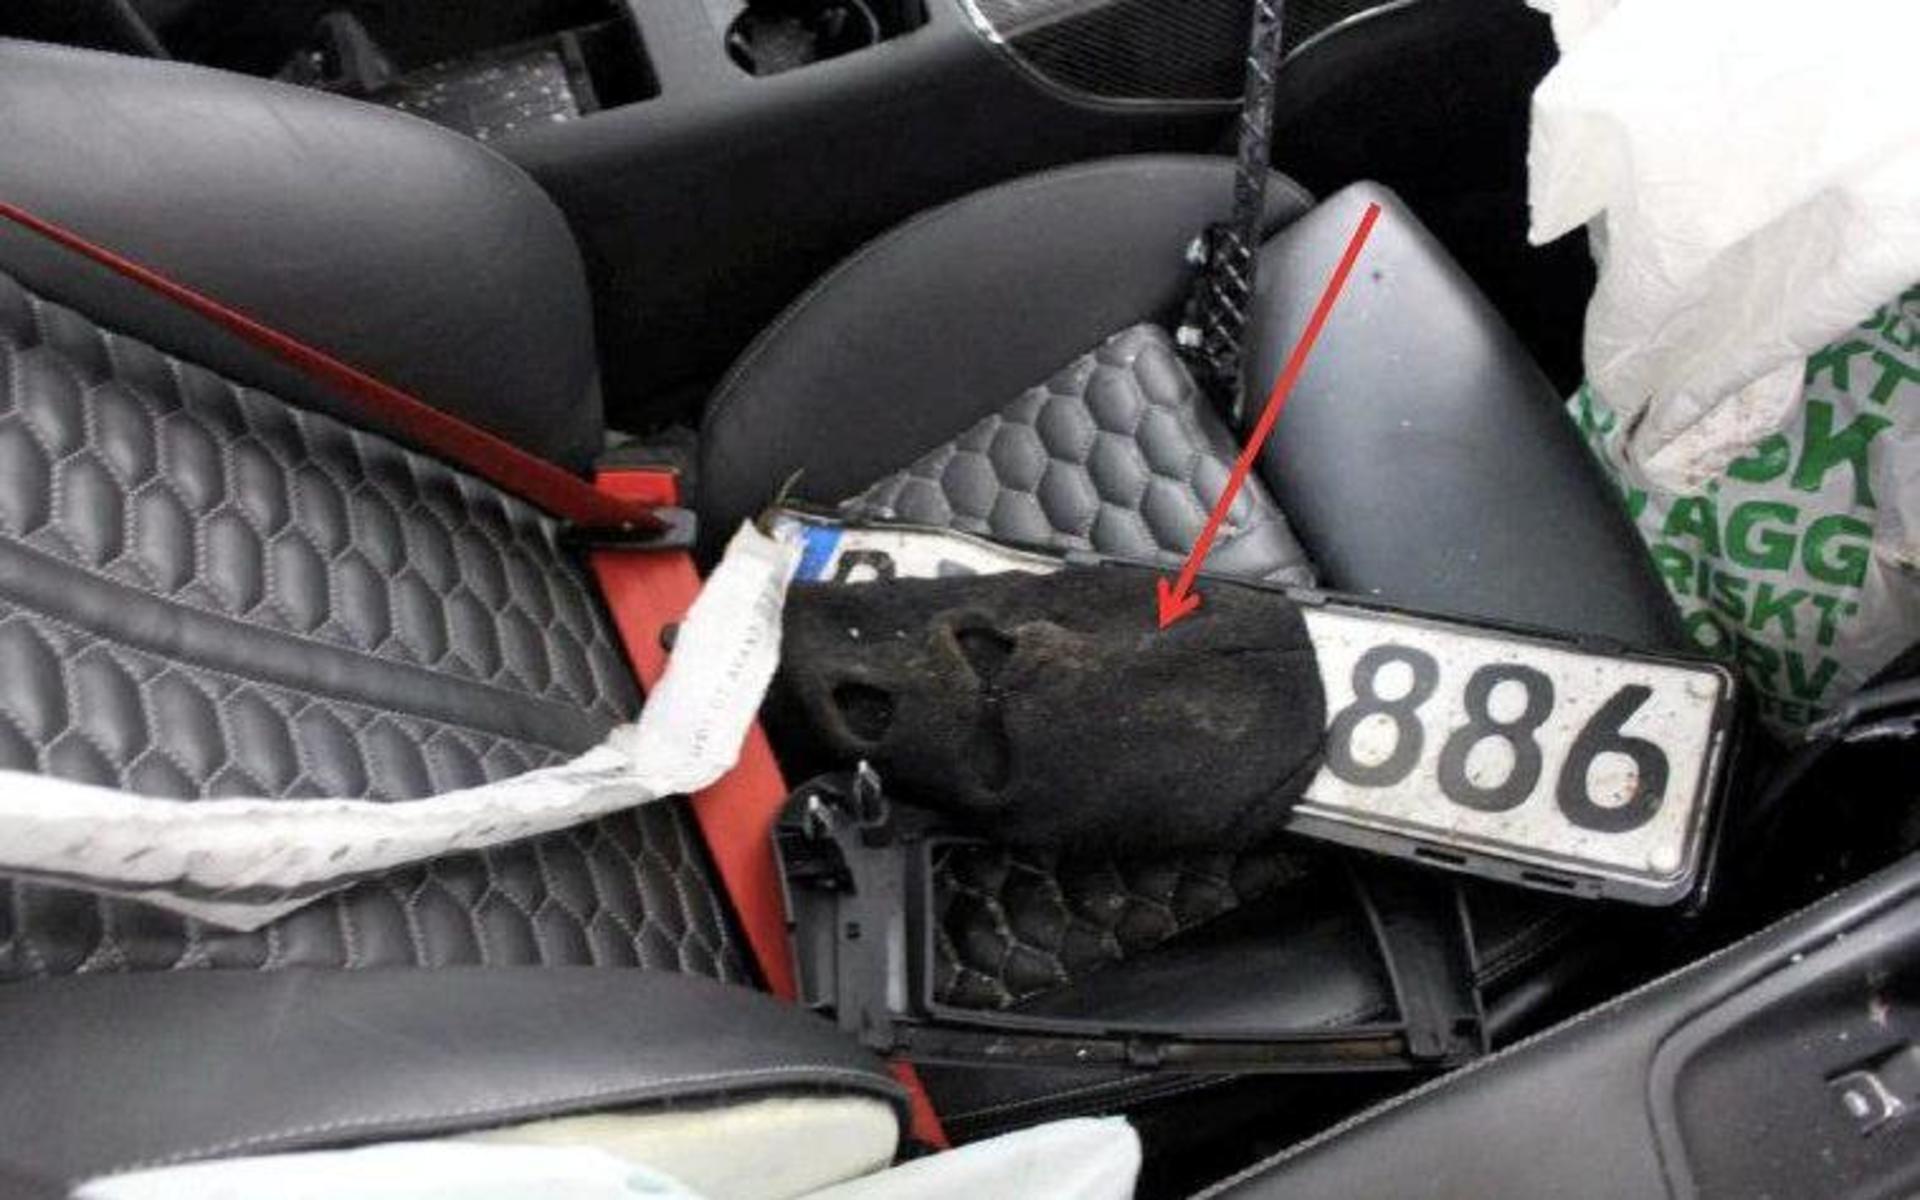 I den kraschade Audin hittade polisen diverse bevismaterial kopplat till rånet i Ica-butiken. Bland annat hittades en rånarluva med laholmarens DNA och falska tyska regplåtar som använts på den stulna flyktbilen.